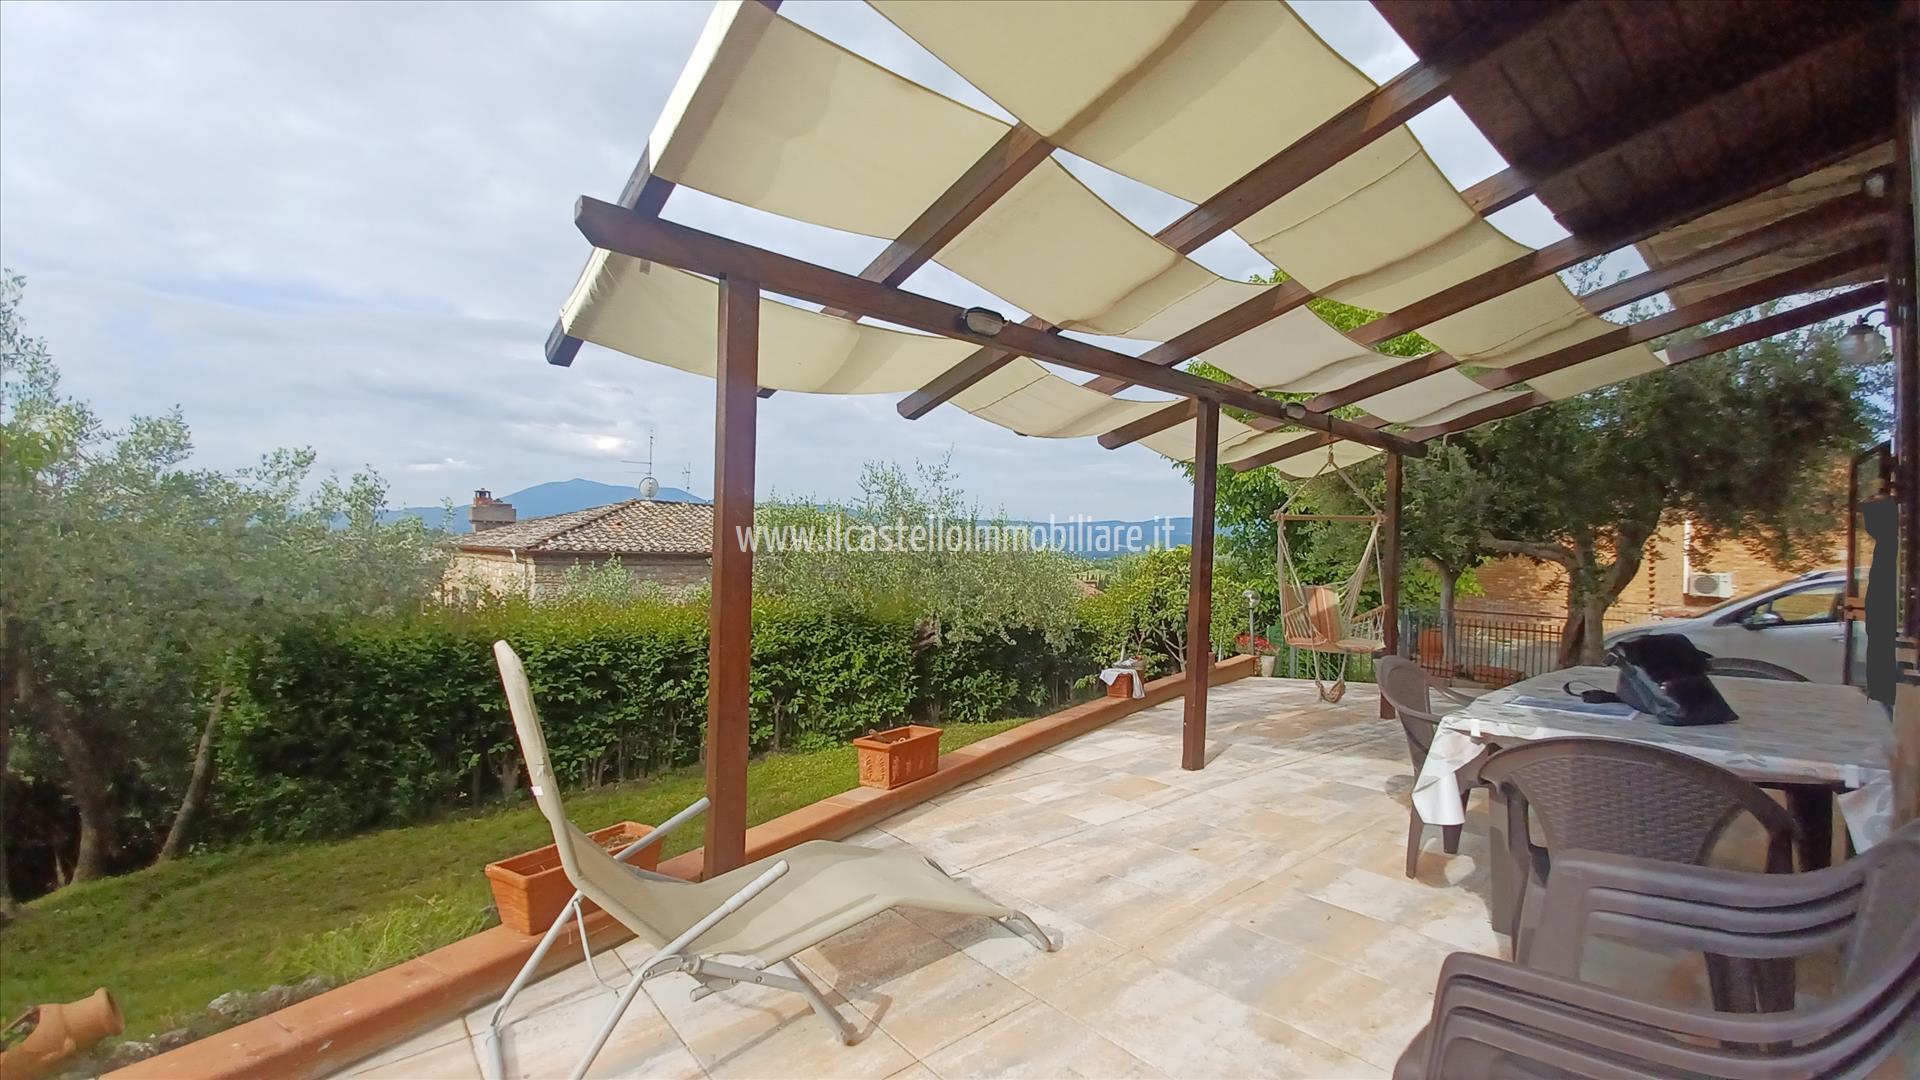 Villa in vendita a Chiusi, 3 locali, prezzo € 175.000 | PortaleAgenzieImmobiliari.it